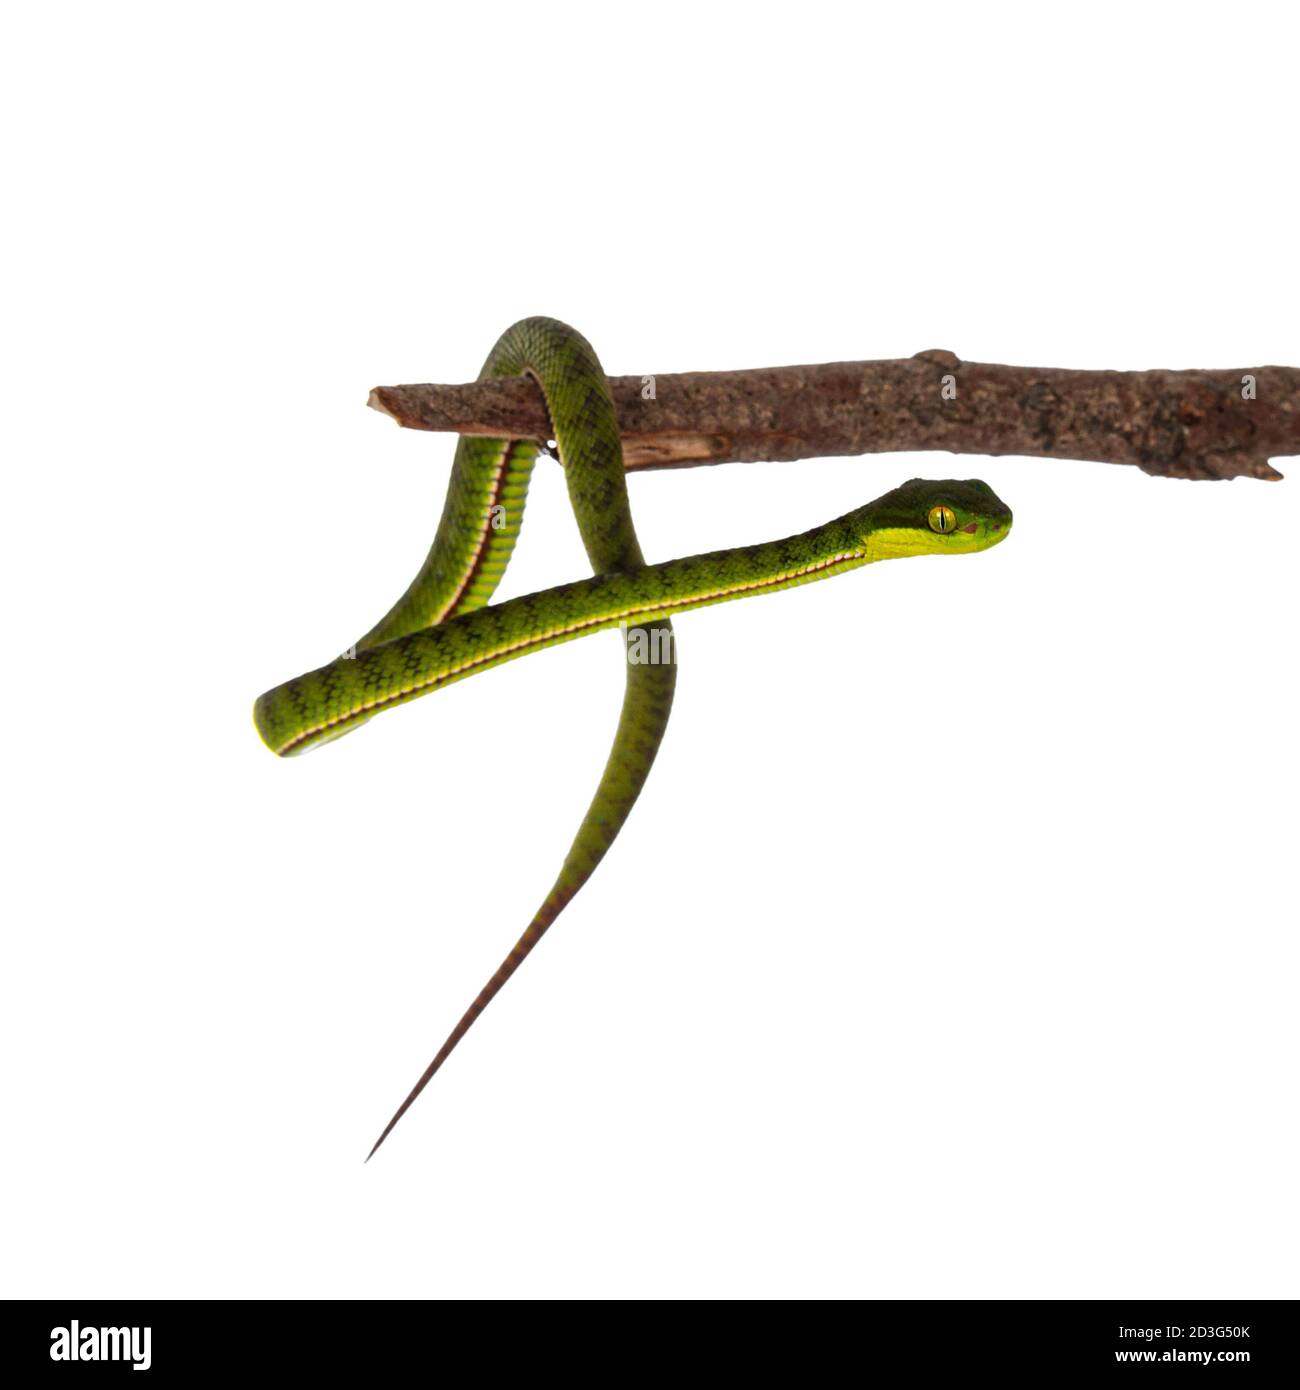 Nahaufnahme von braun gefleckten grünen Baby-Pitviper oder Grube Viper hängen auf Holzzweig. Hohe Detailgenauigkeit. Isoliert auf weißem Hintergrund. Stockfoto